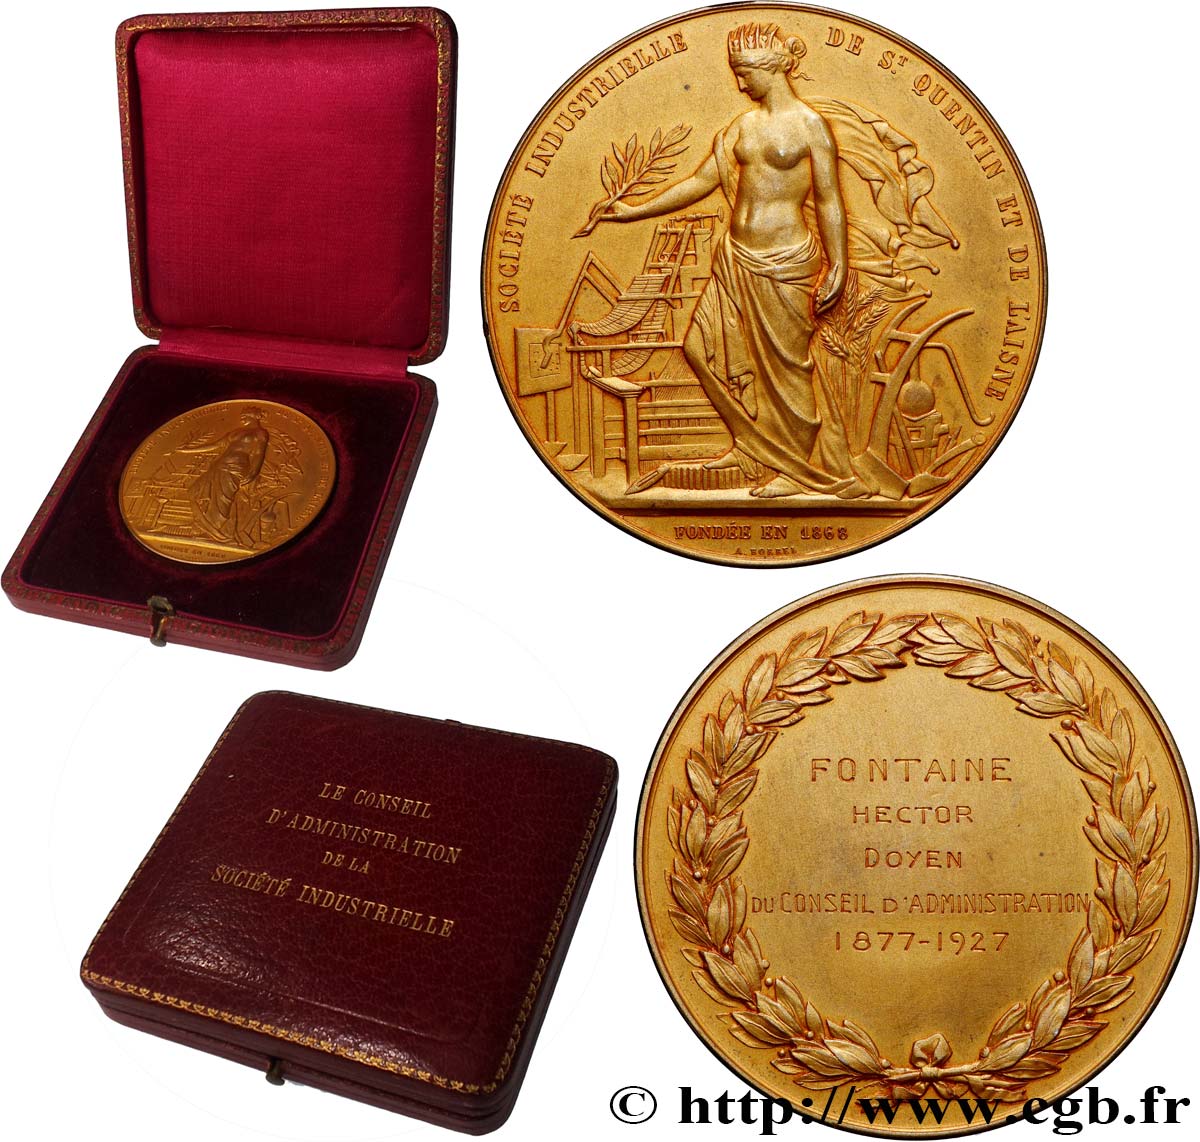 III REPUBLIC Médaille, Société industrielle de St Quentin et de l’Aisne, Conseil d’administration AU